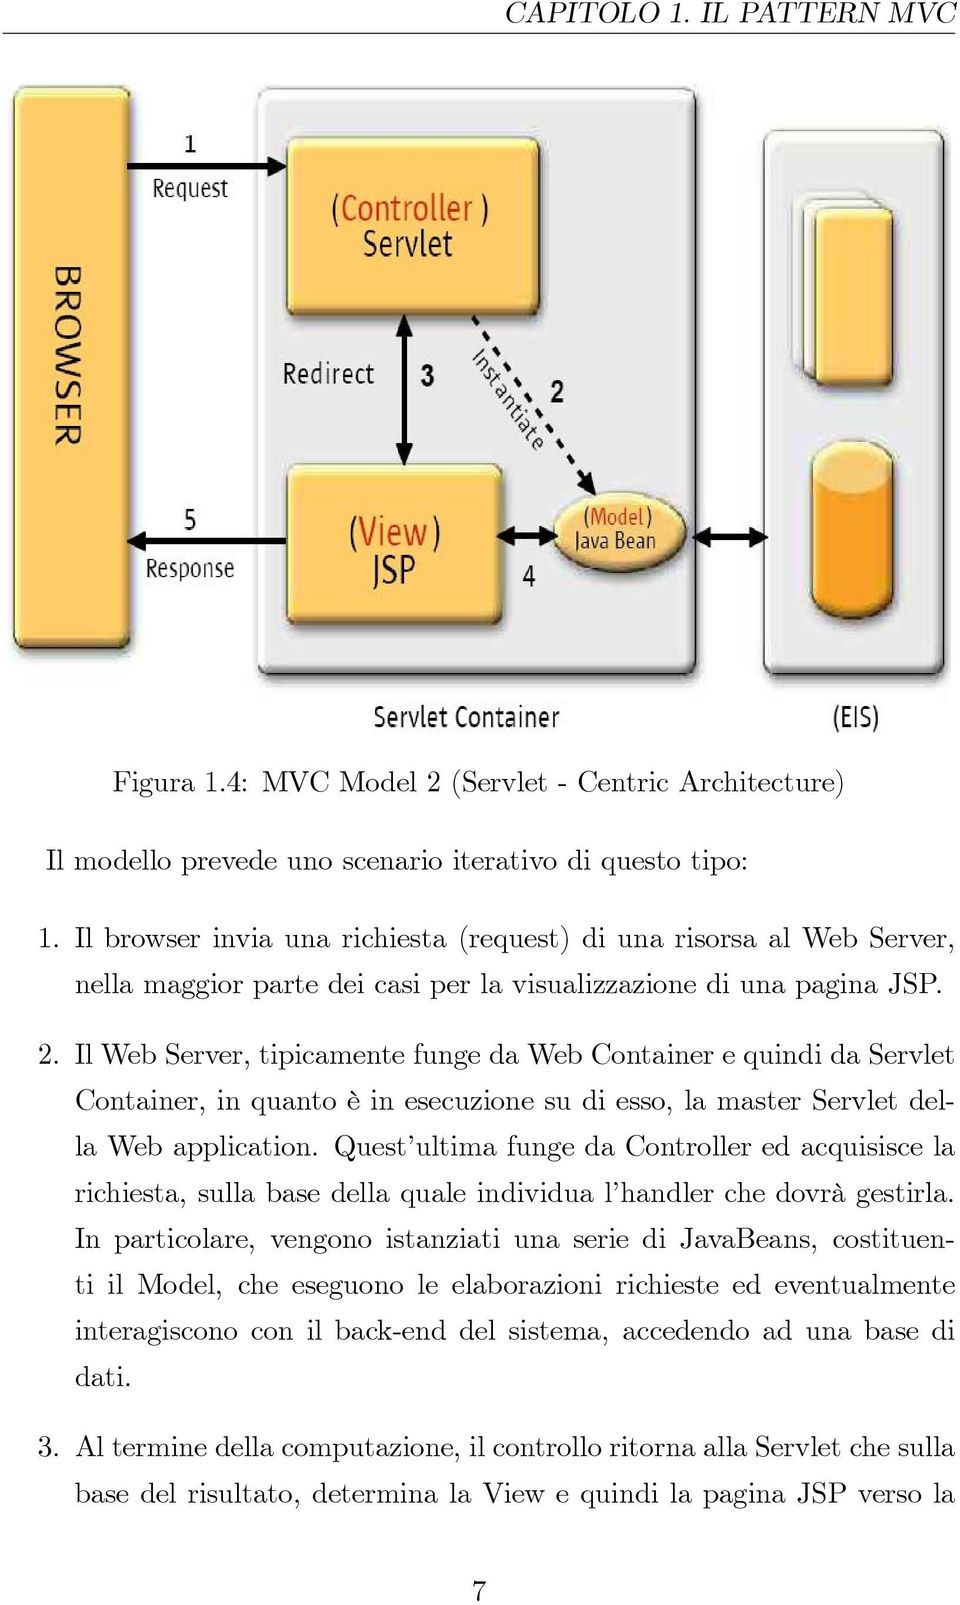 Il Web Server, tipicamente funge da Web Container e quindi da Servlet Container, in quanto è in esecuzione su di esso, la master Servlet della Web application.